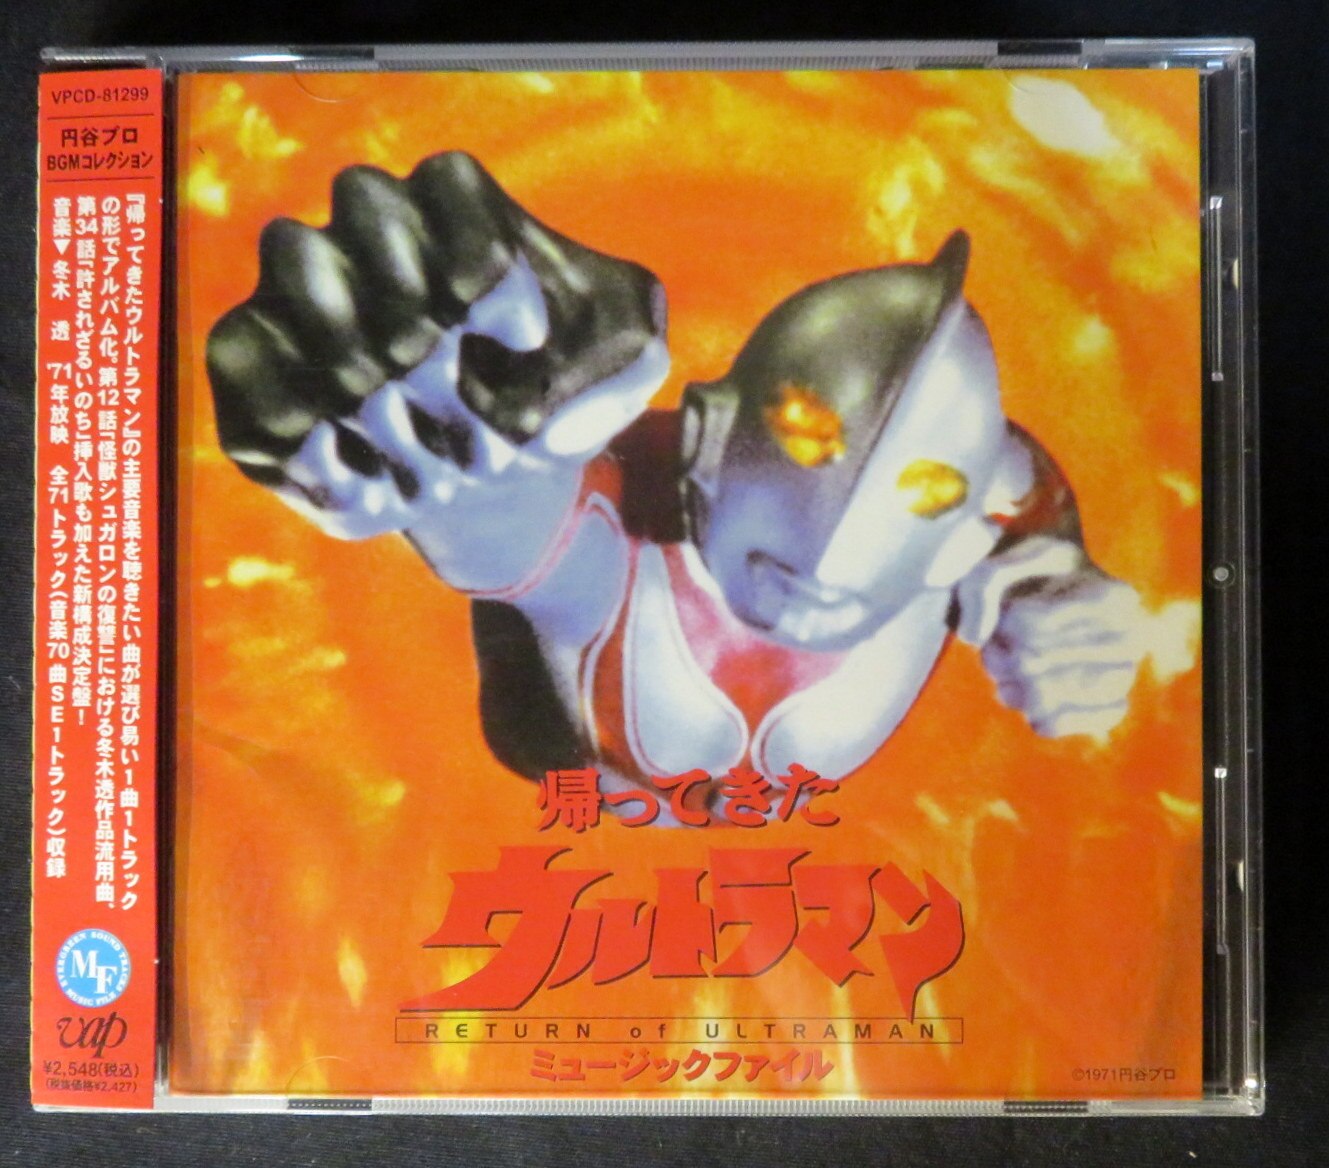 Tokusatsu Cd The Return Of Ultraman Music File Mandarake Online Shop